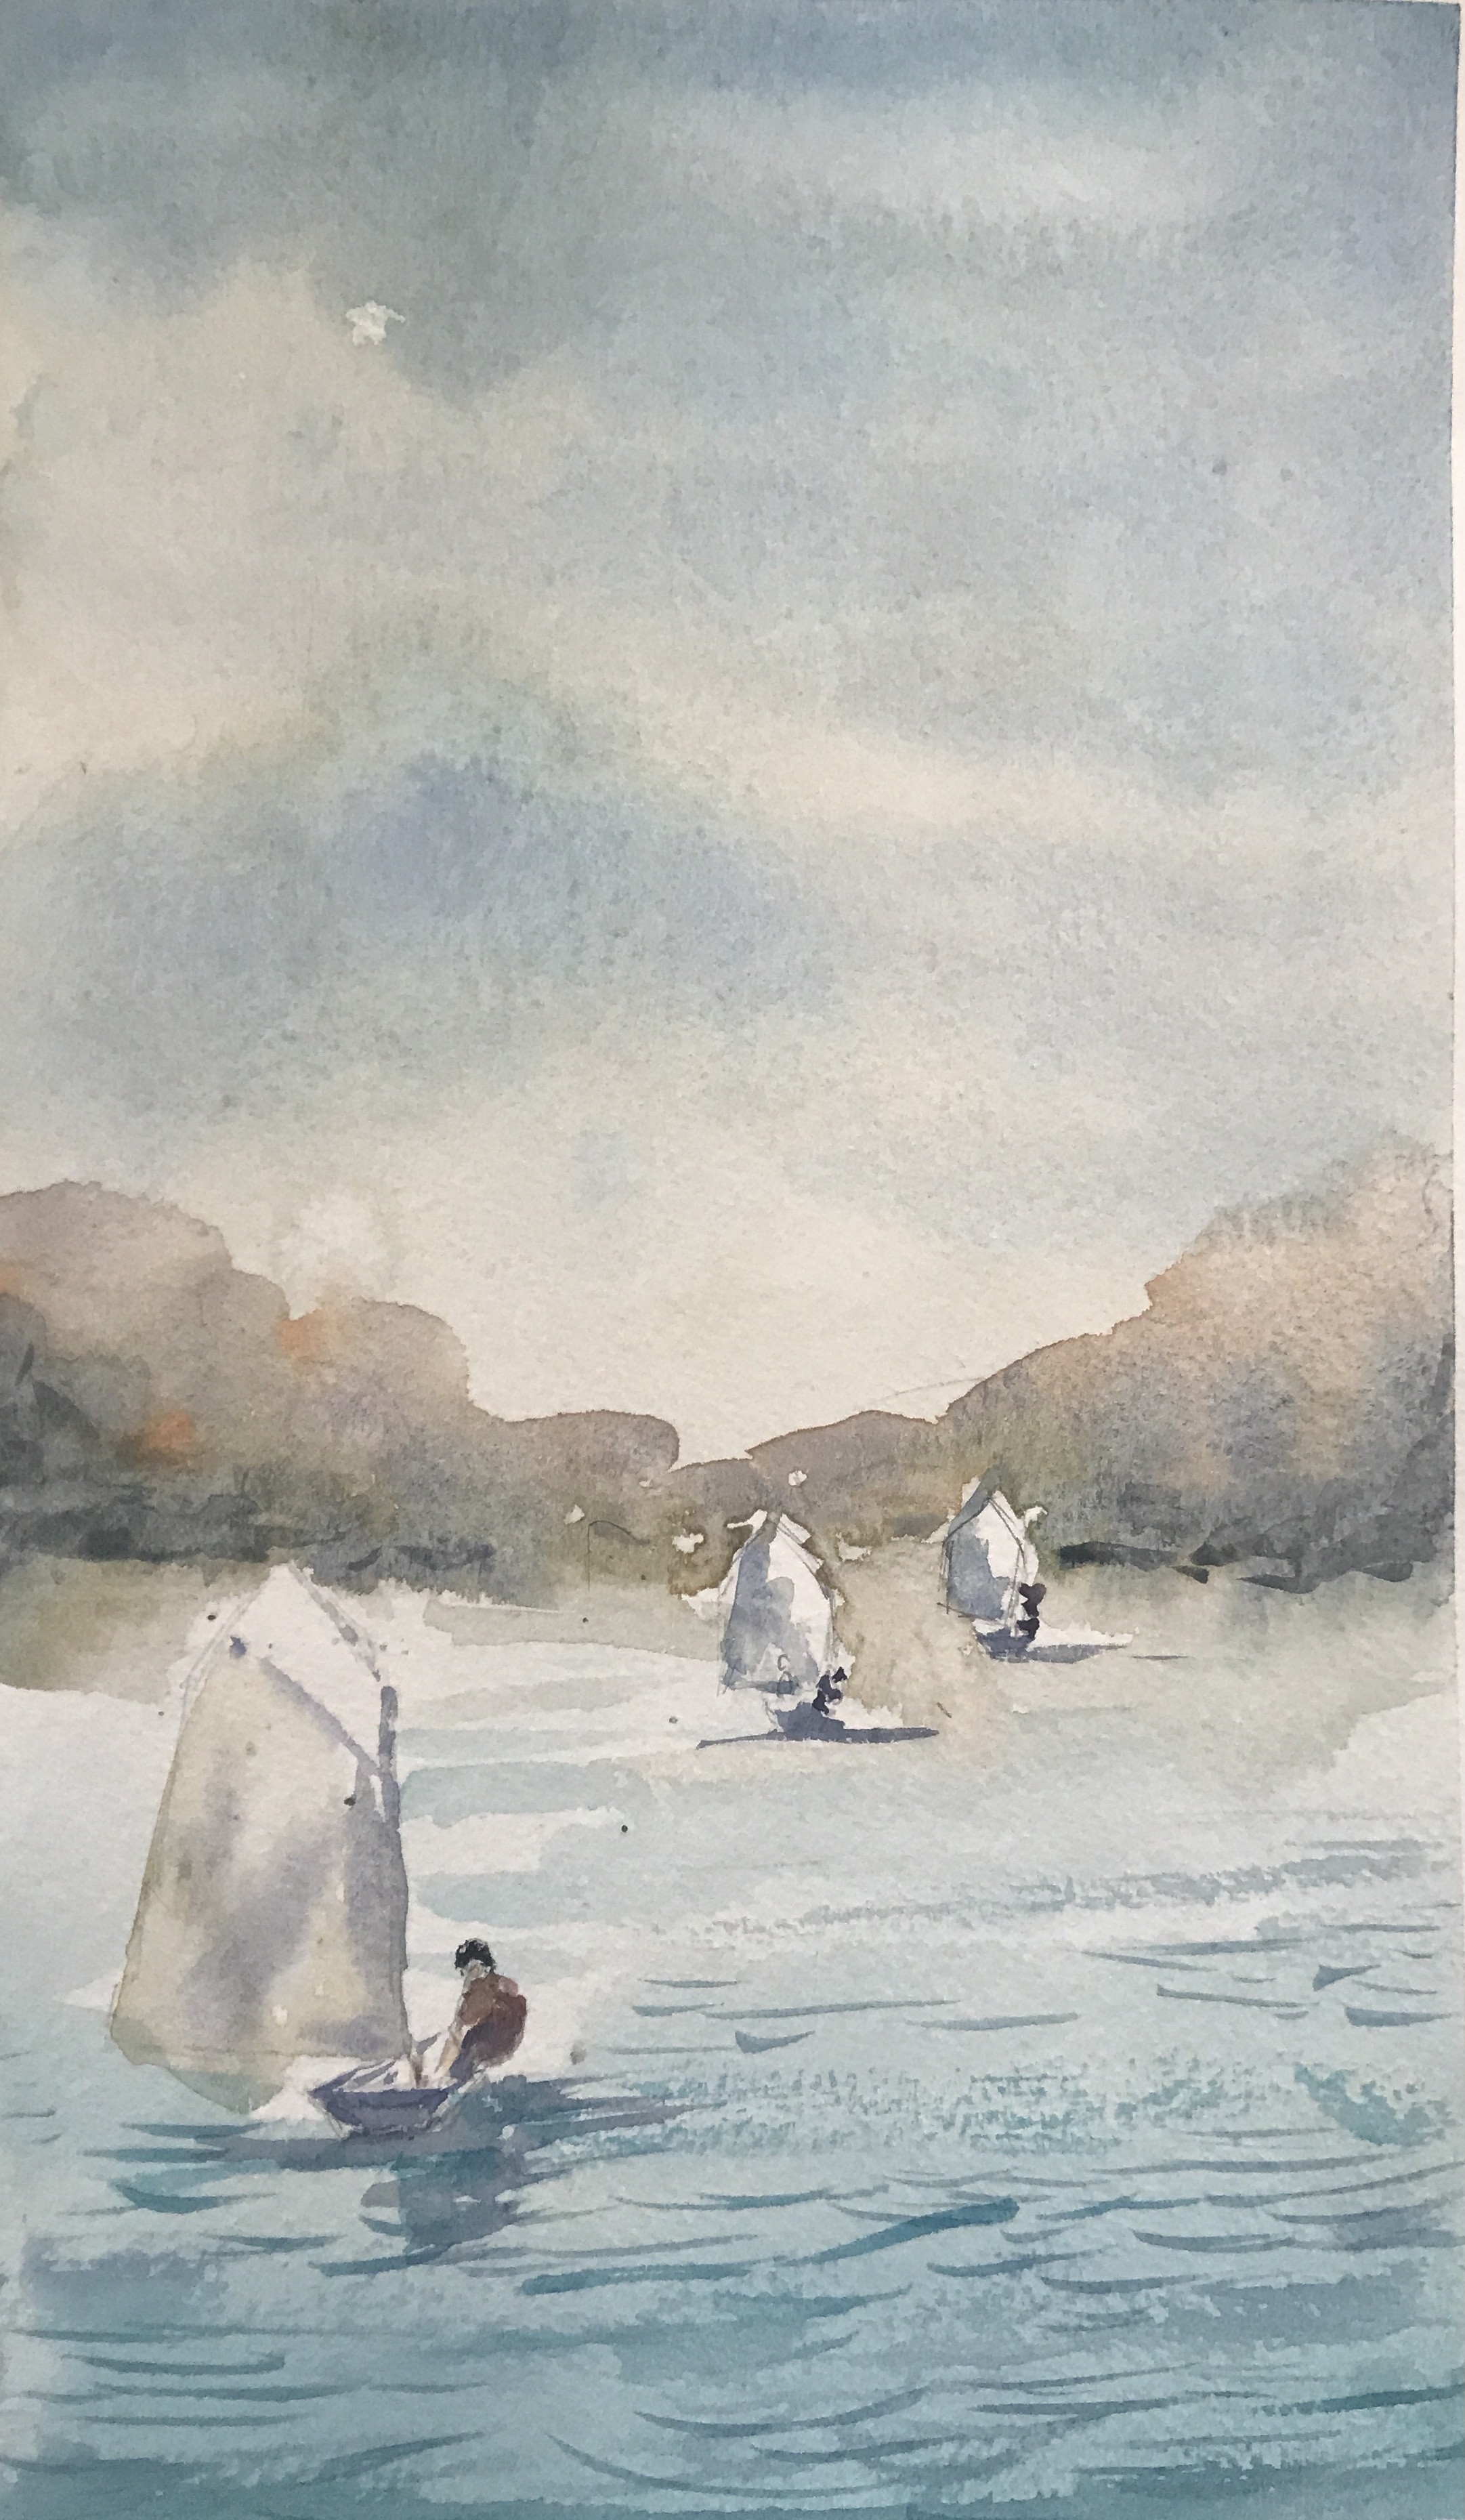 Sailing at Bolgoda lake by Thilini De Simon